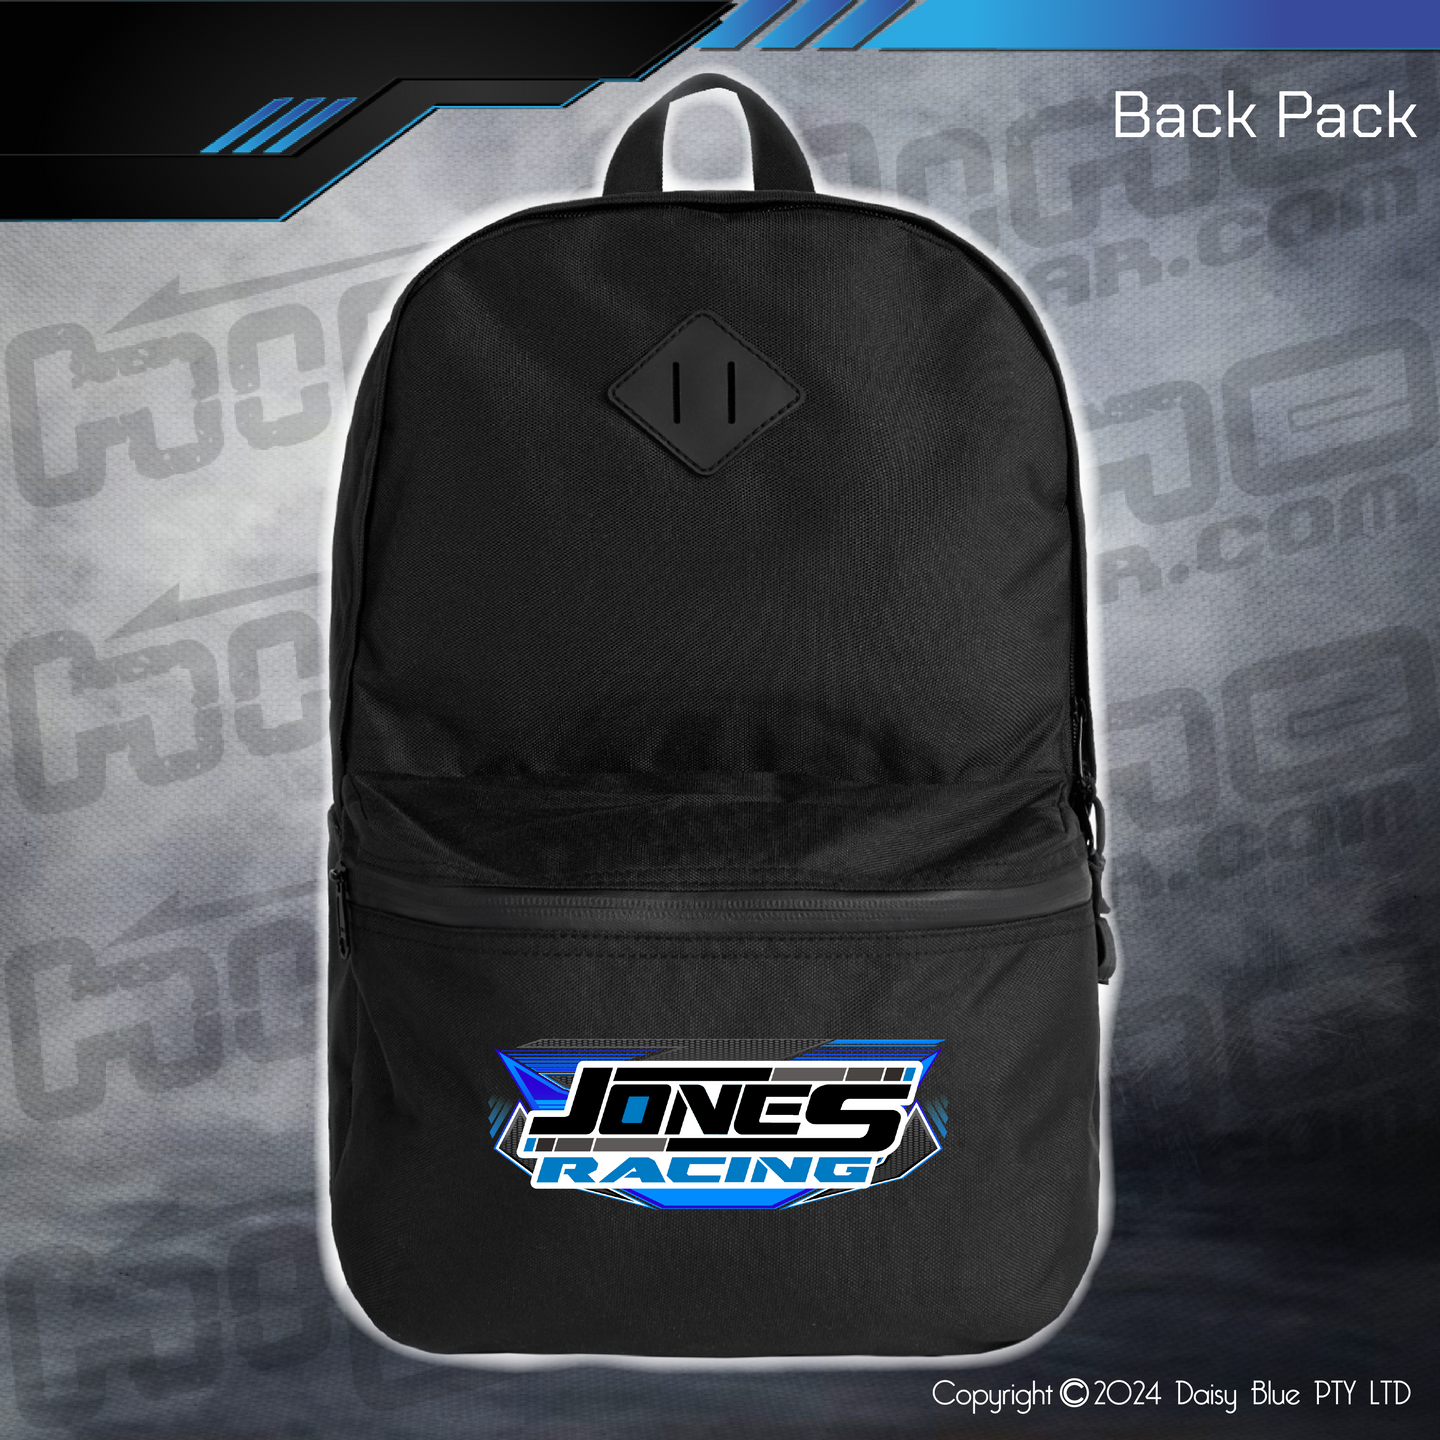 Back Pack - Jones Racing